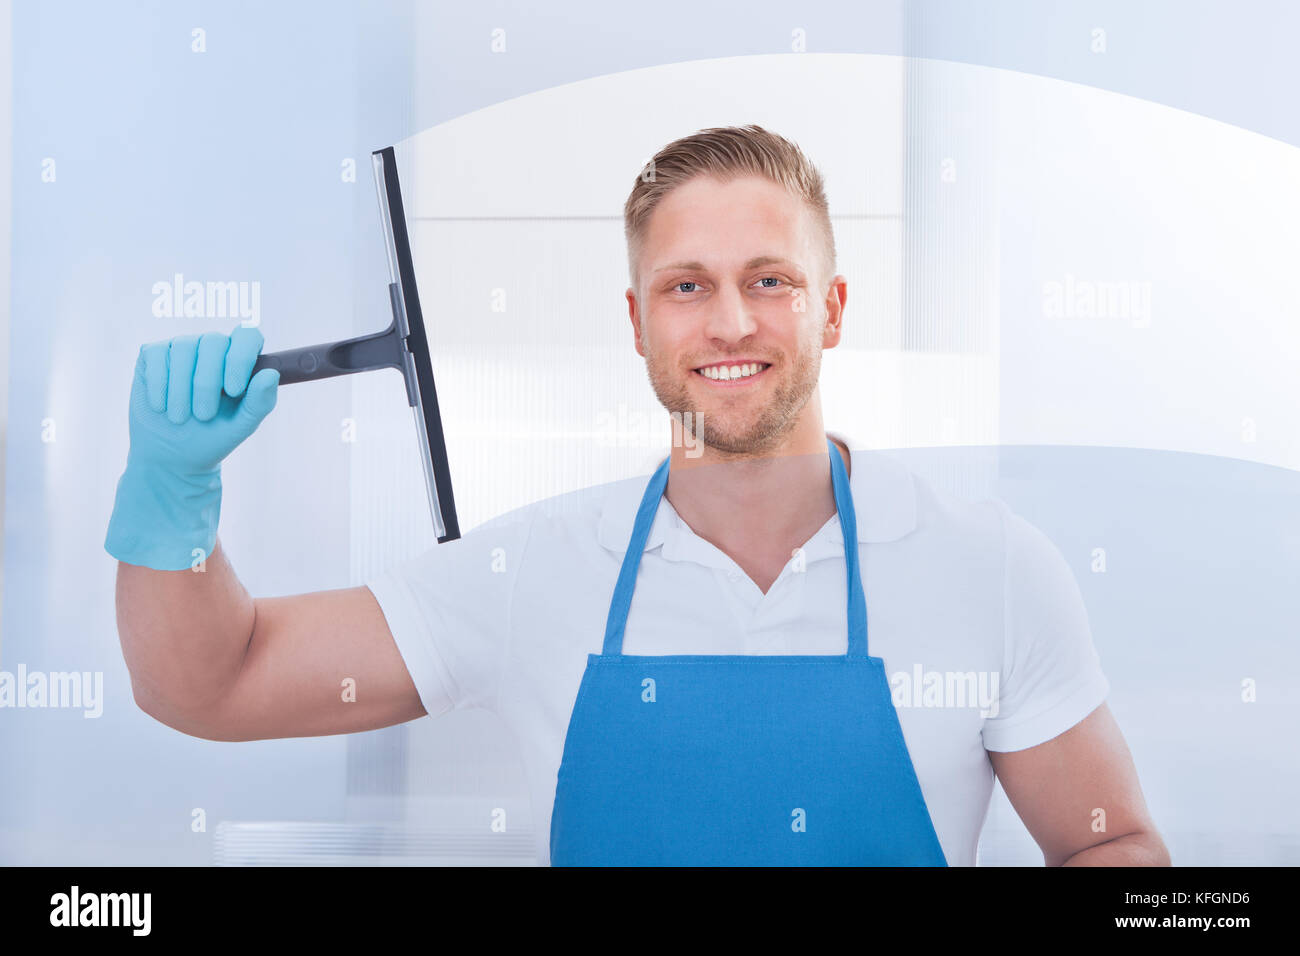 Männliche Hausmeister mit einem Rakel ein Fenster in einem Büro das Tragen einer Schürze und Handschuhe zu reinigen, da er arbeitet Stockfoto